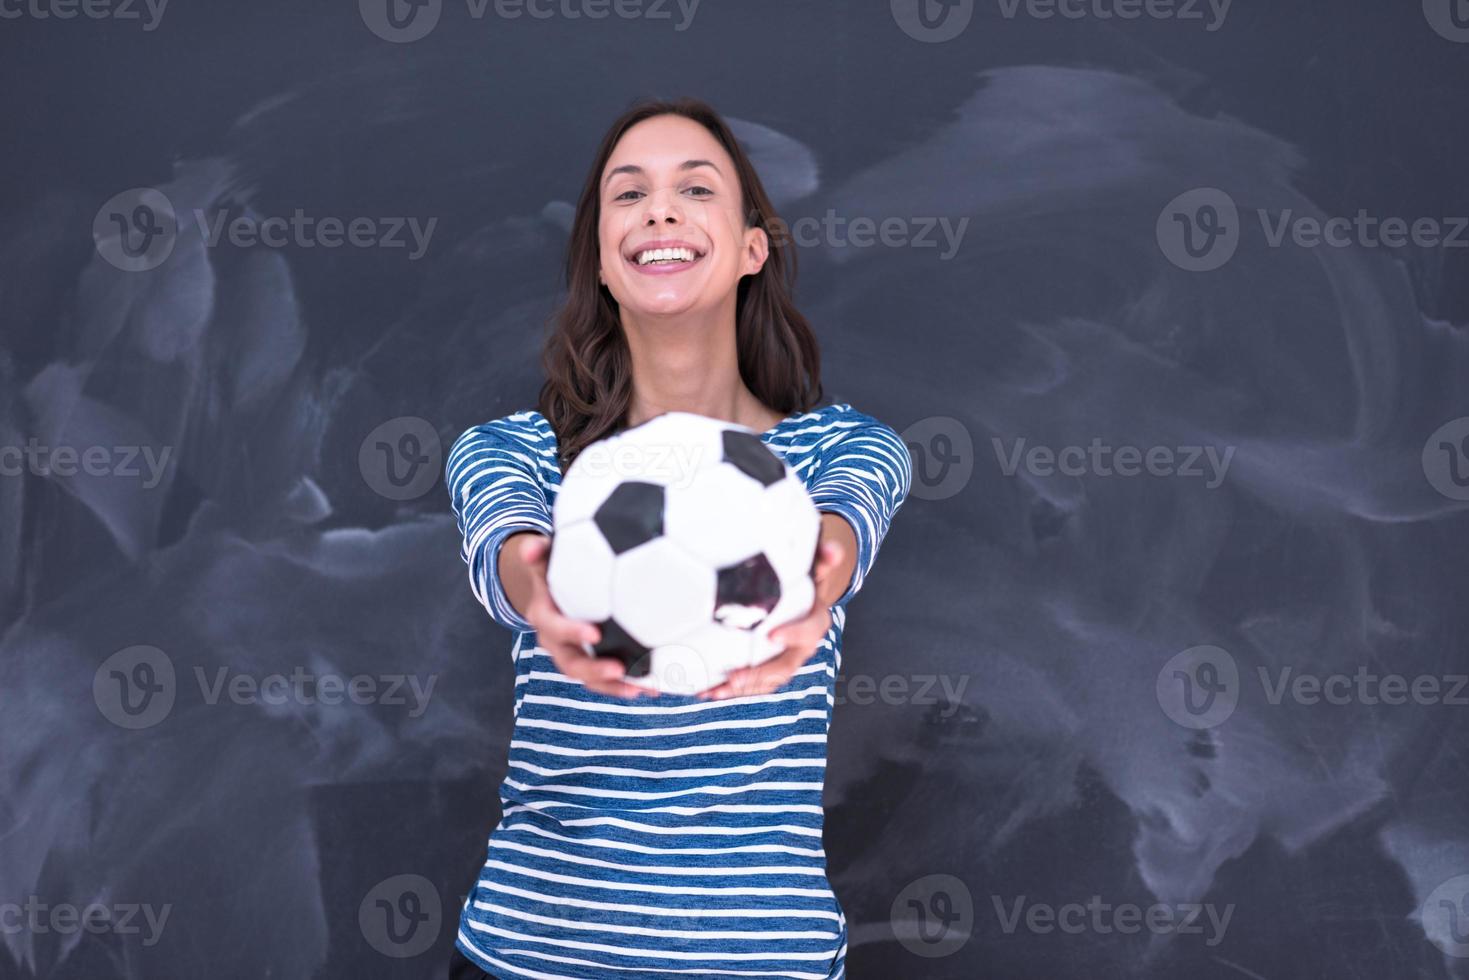 mulher segurando uma bola de futebol na frente da prancheta de giz foto